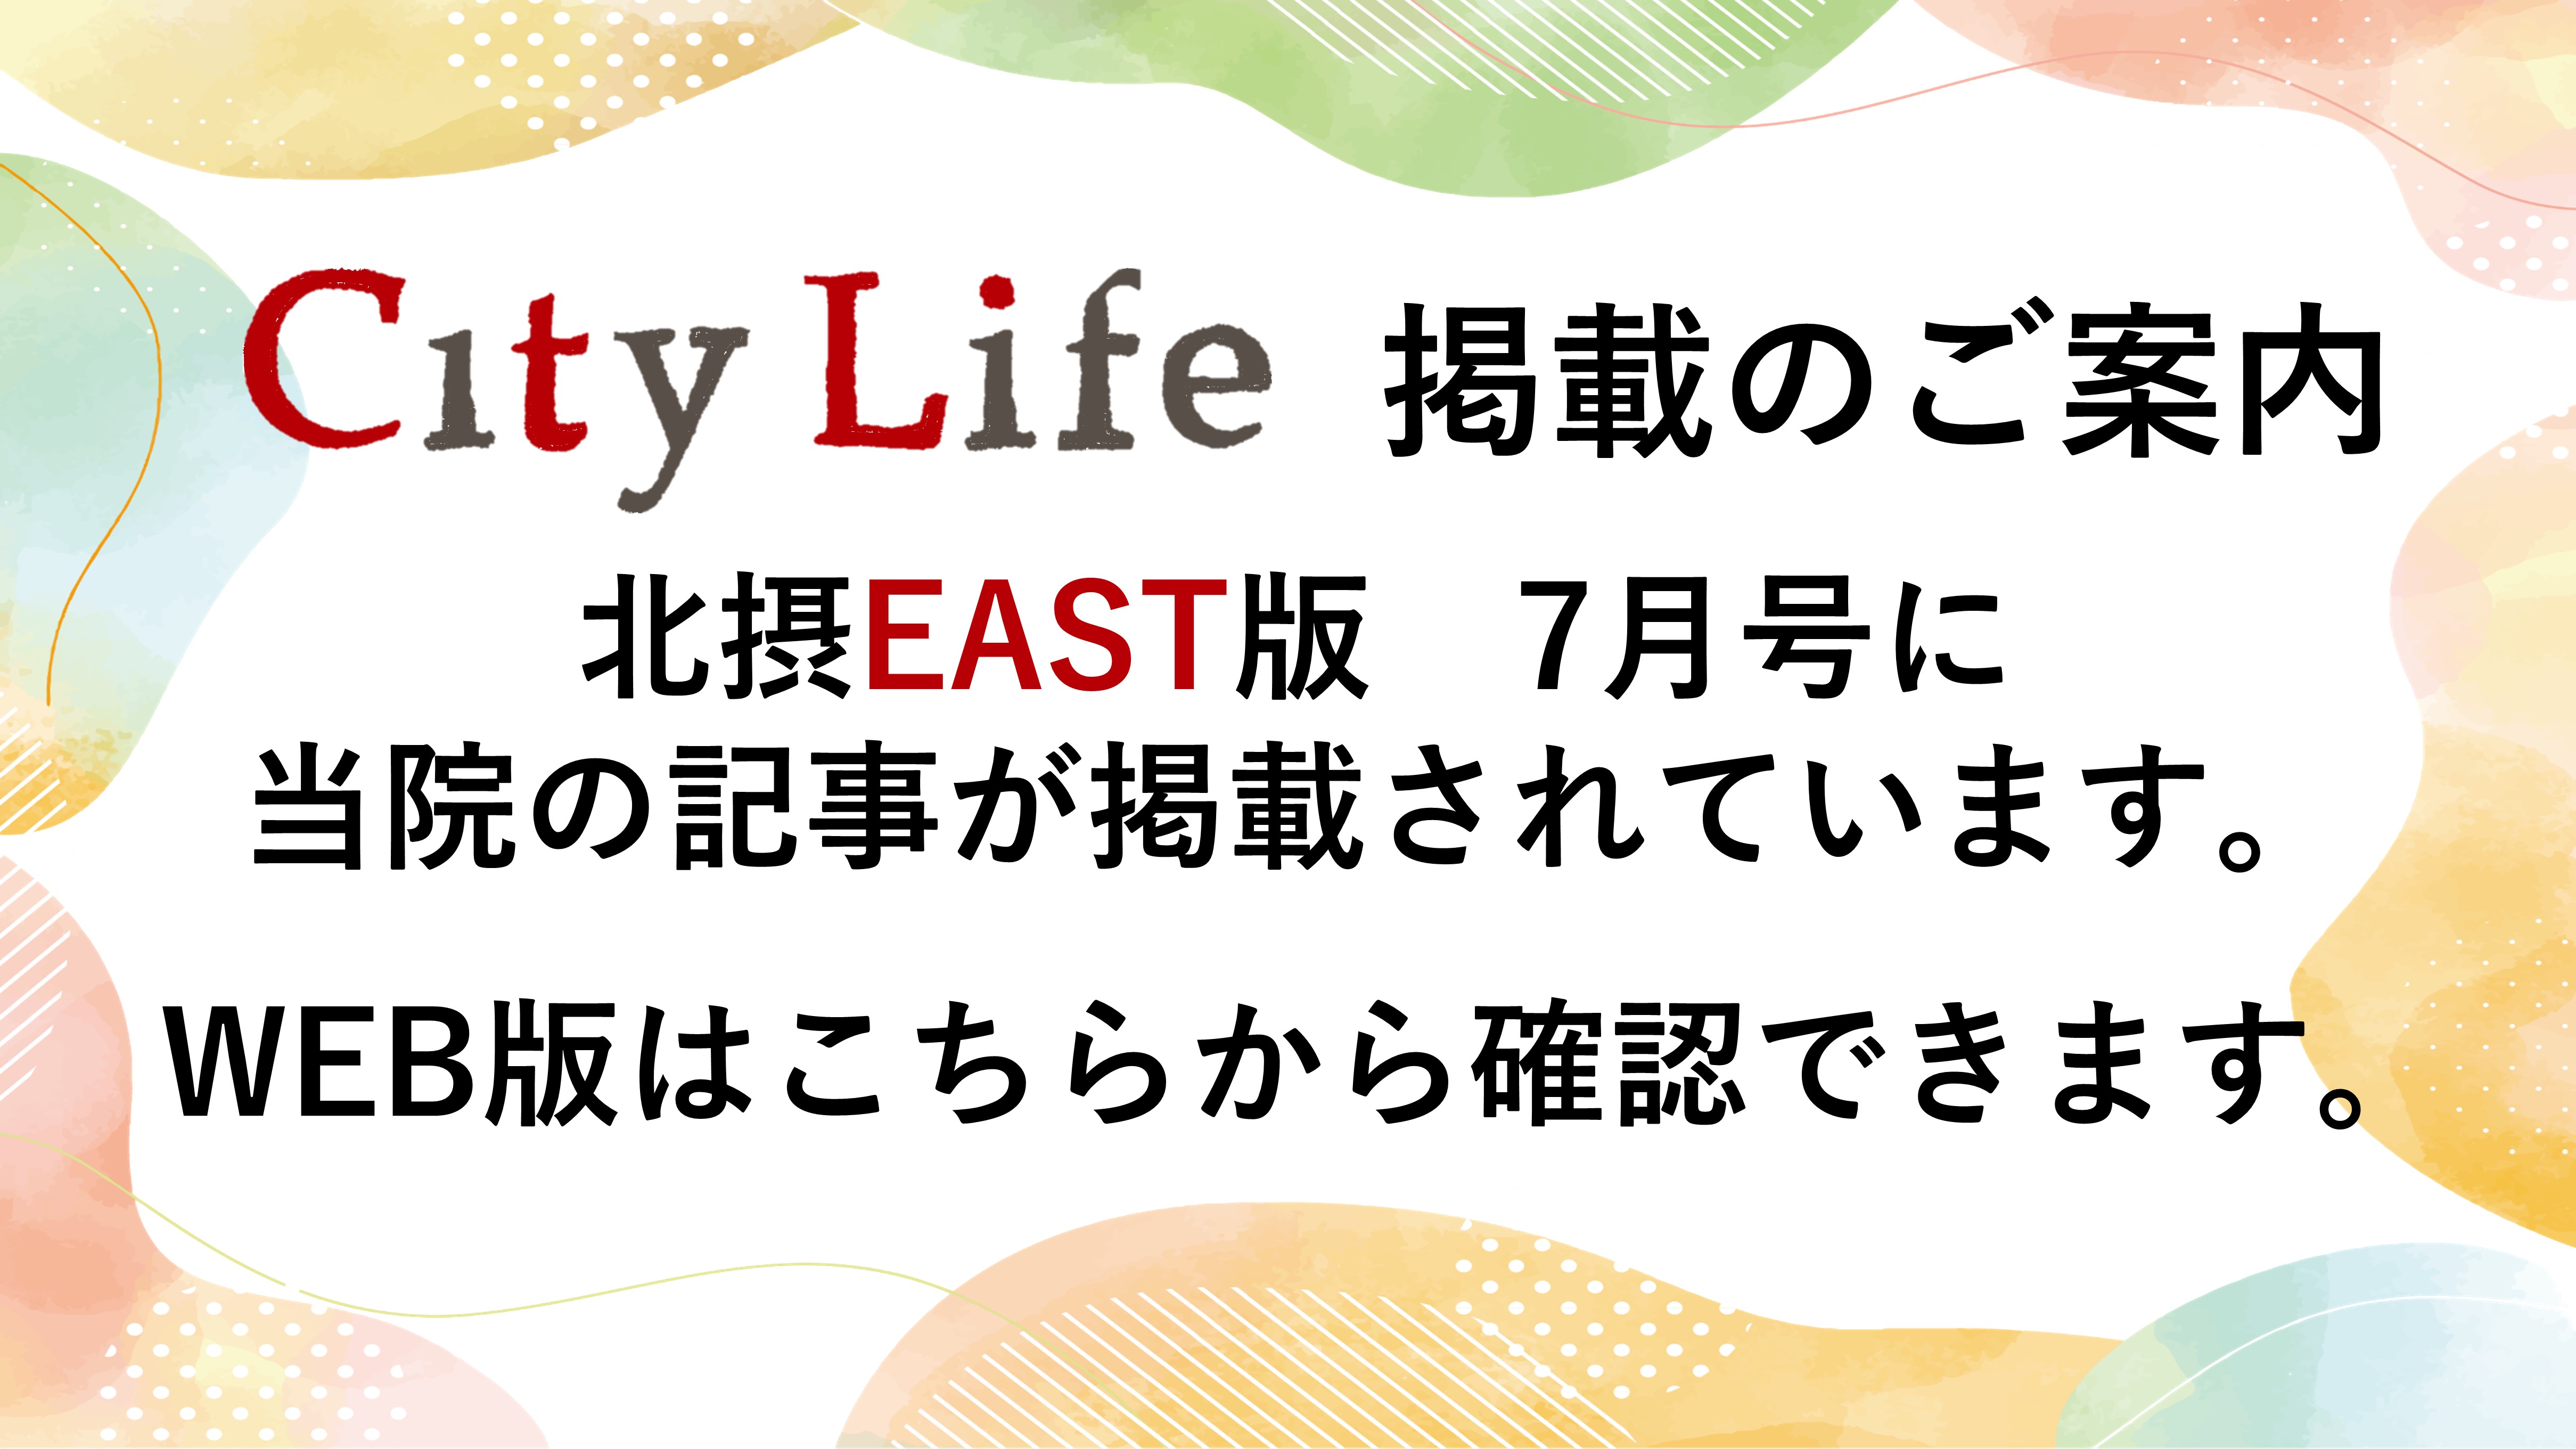 City Life北摂EAST版に当院の事が掲載されています。